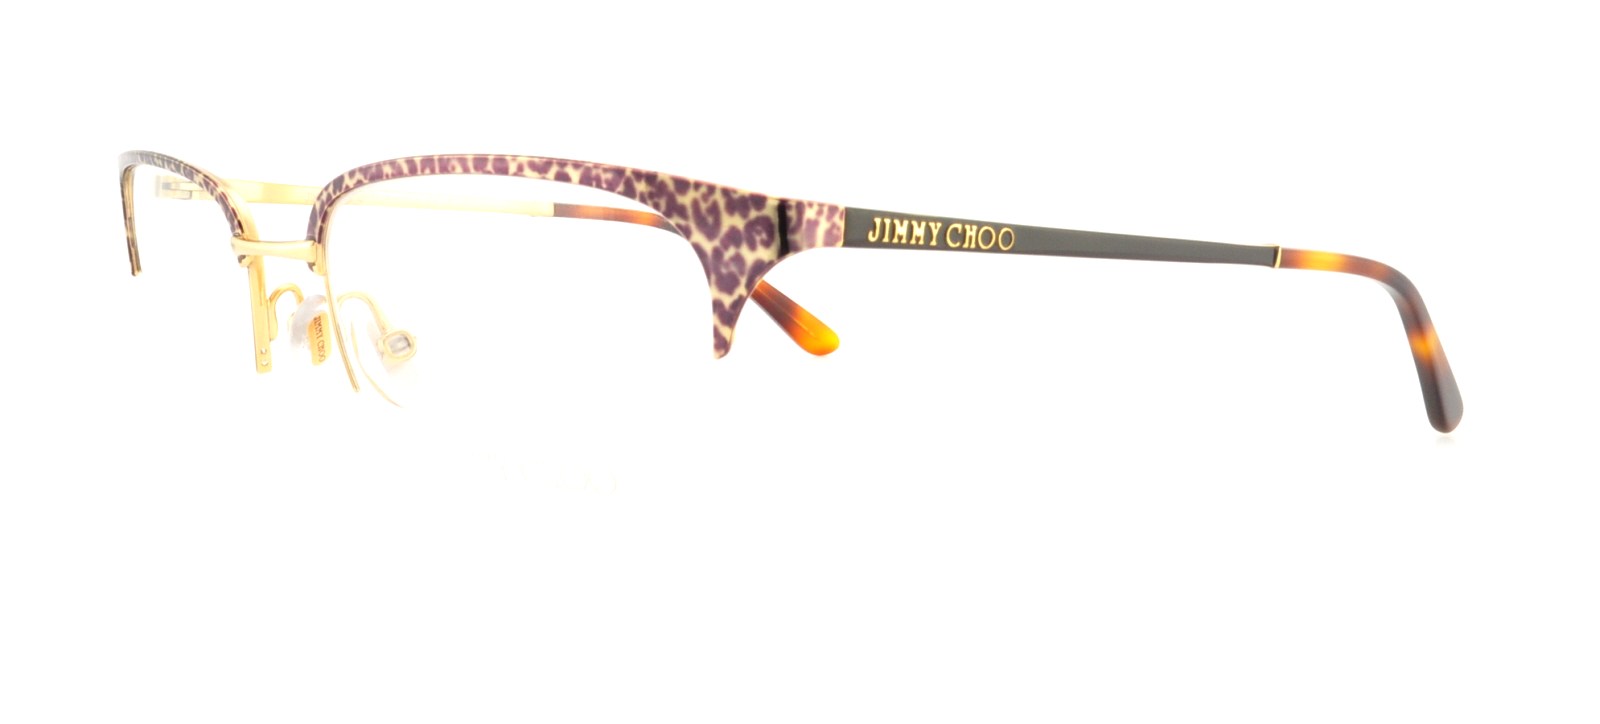 Picture of Jimmy Choo Eyeglasses 91